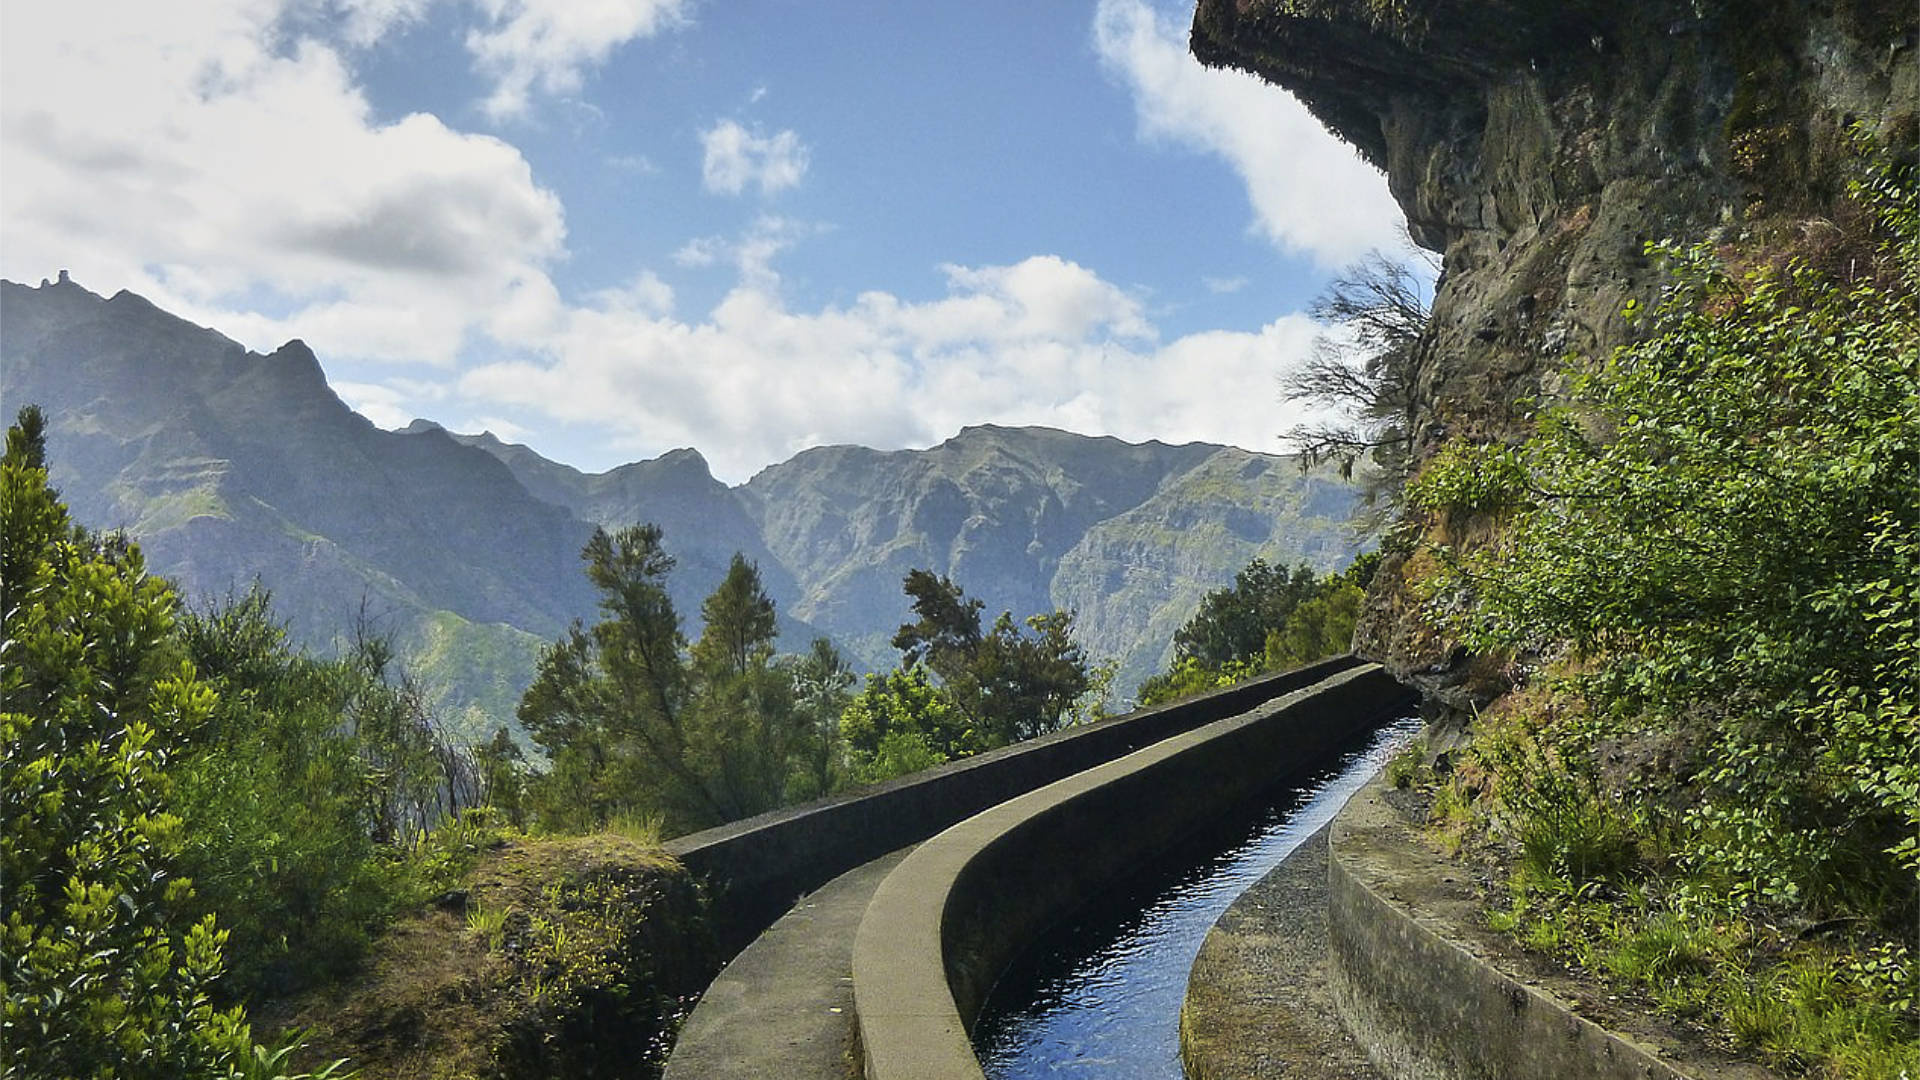 Madeira travels, Waterways of Madeira, Spanish influence, Scenic views, 1920x1080 Full HD Desktop